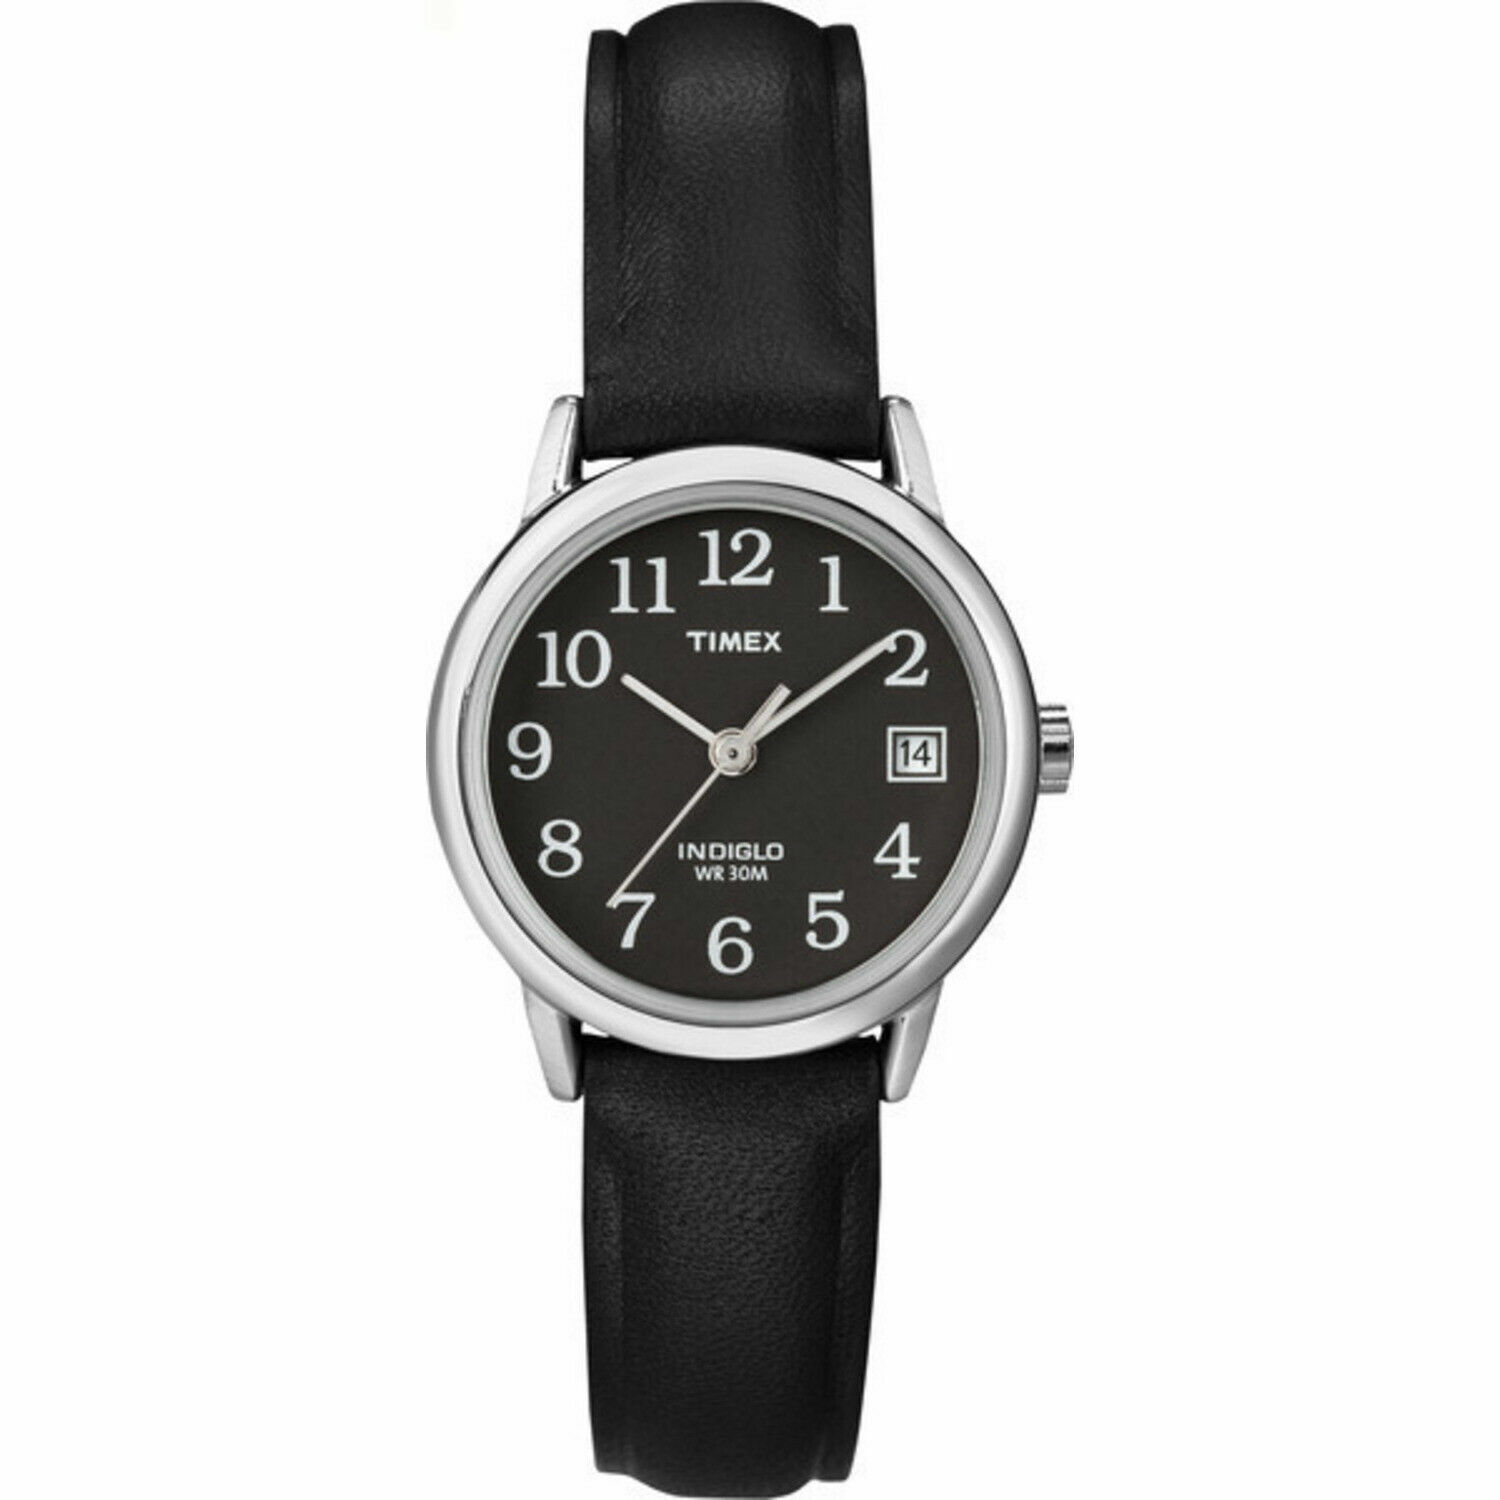 Timex T2N525, женские черные кожаные часы Easy Reader, индиго, дата, корпус 25 мм